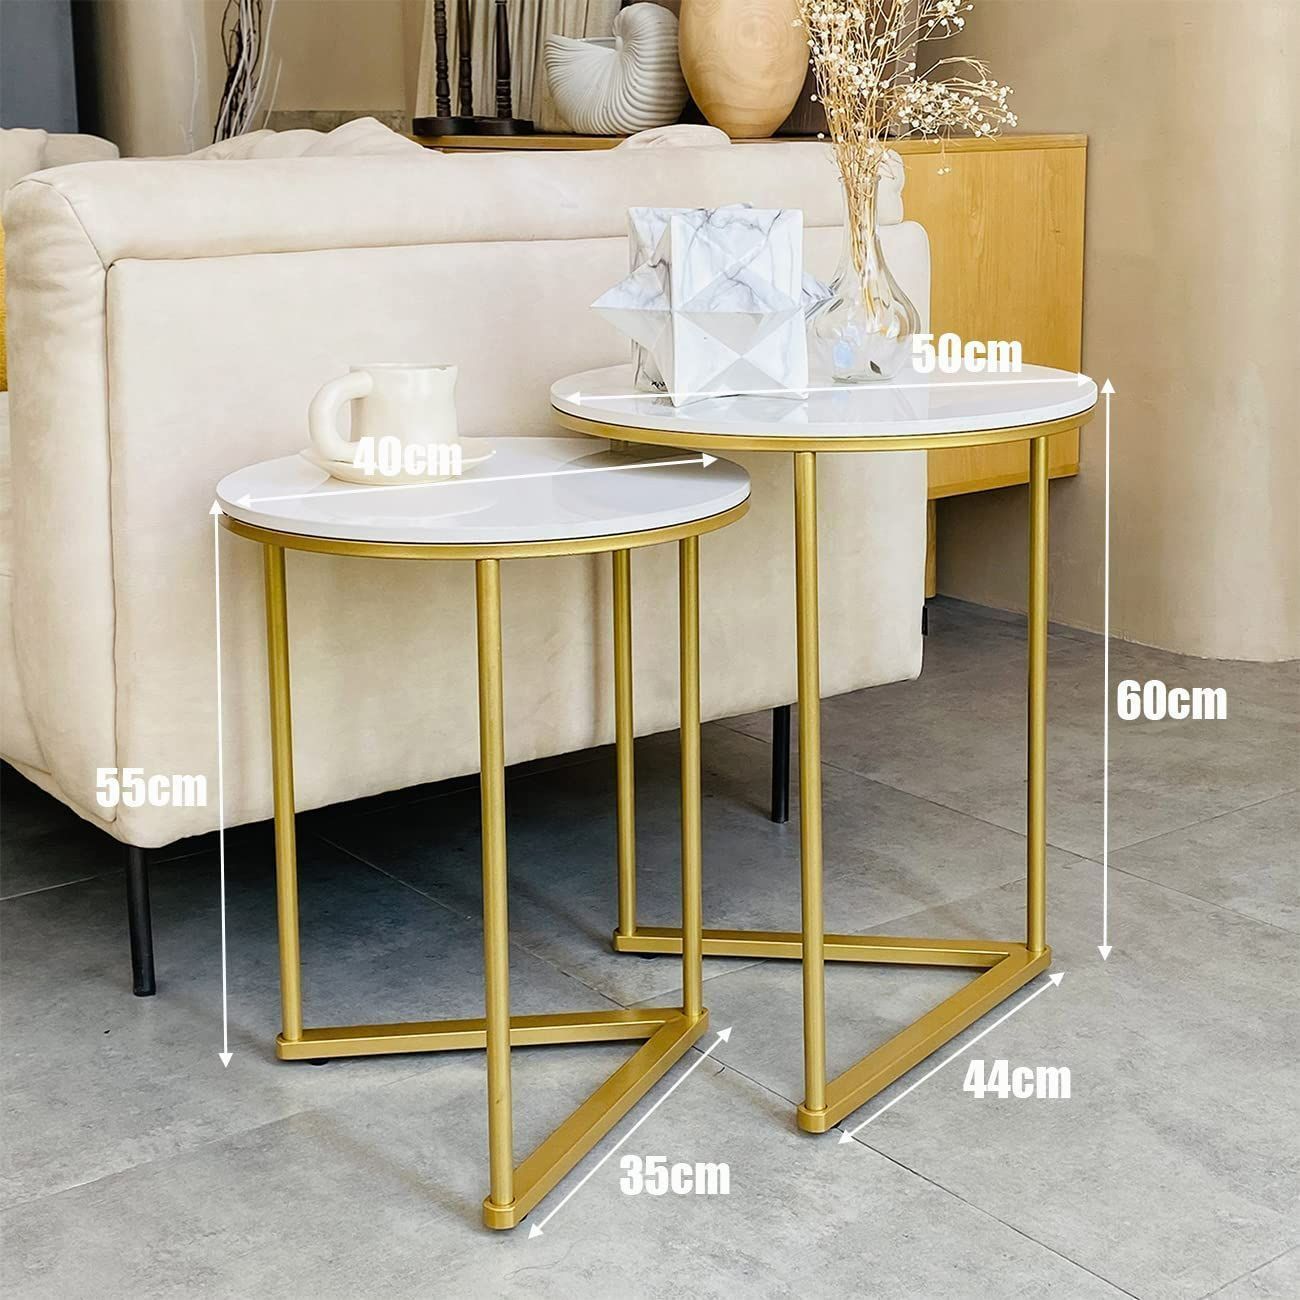 丸サイドテーブル 2個セット 焼結石天板×ゴールド色アイアン脚 センターテーブル ホワイト 円形 丸テーブル おしゃれ インテリア 